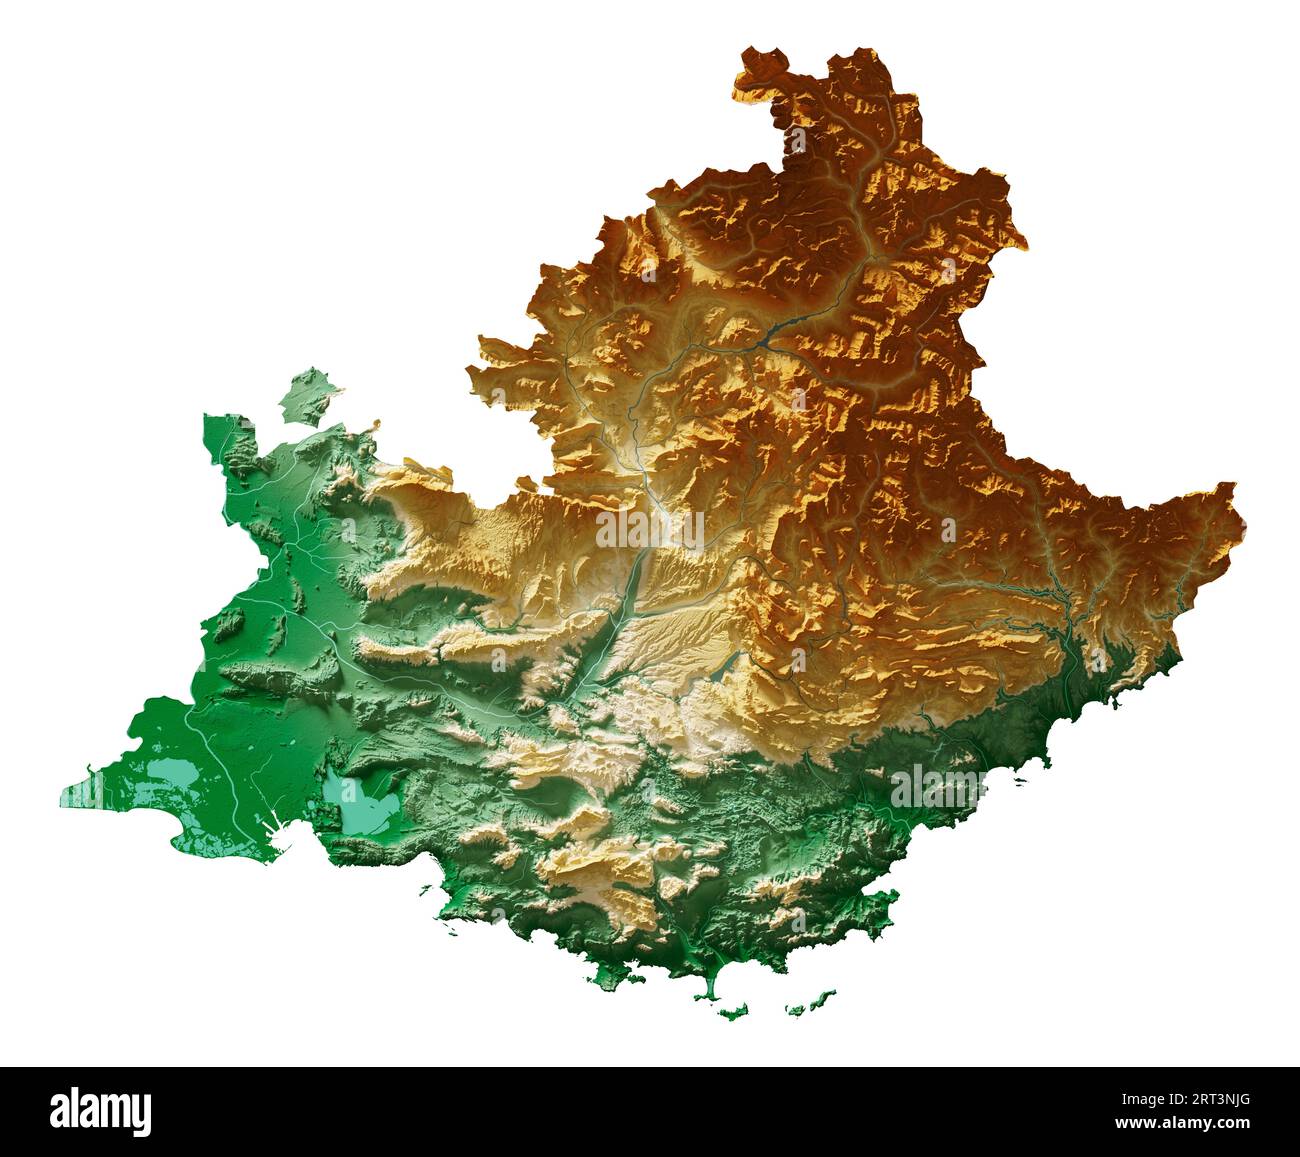 Provence-Alpes-Côte d'Azur. Région de France. Rendu 3D détaillé d'une carte en relief ombré, rivières, lacs. Coloré par l'altitude. Fond blanc pur Banque D'Images